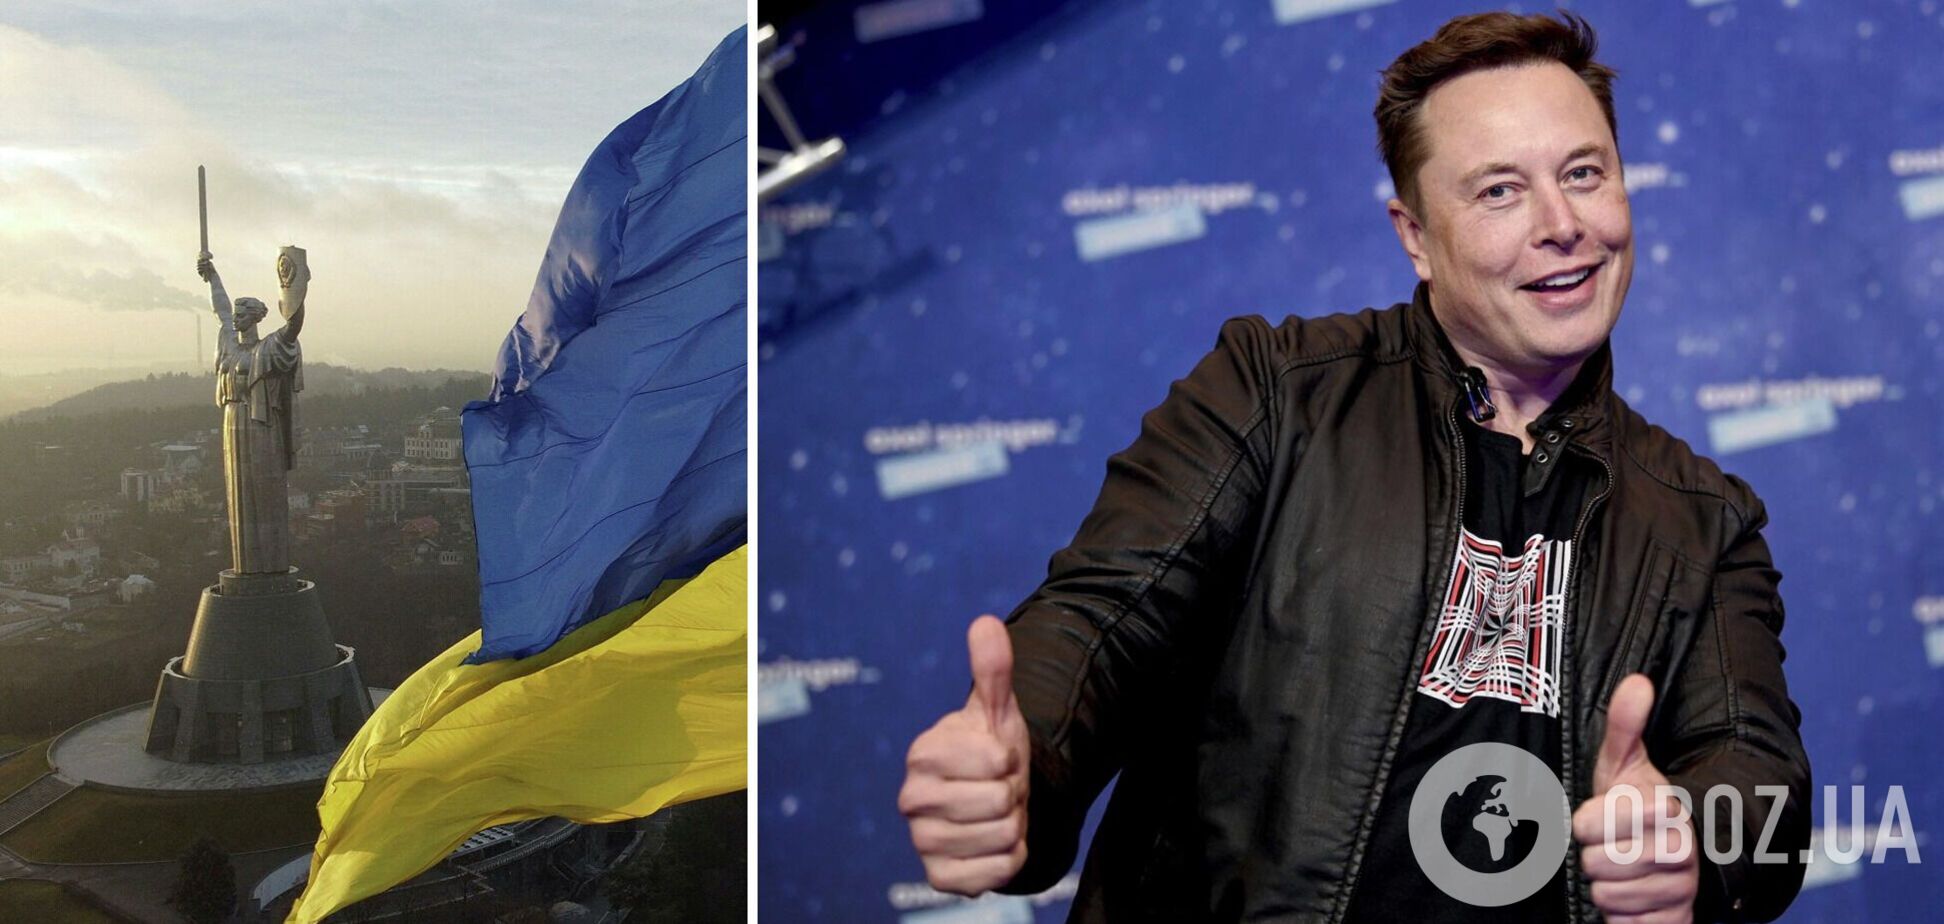 Маск предоставил Украине возможность пользоваться спутниковой сетью